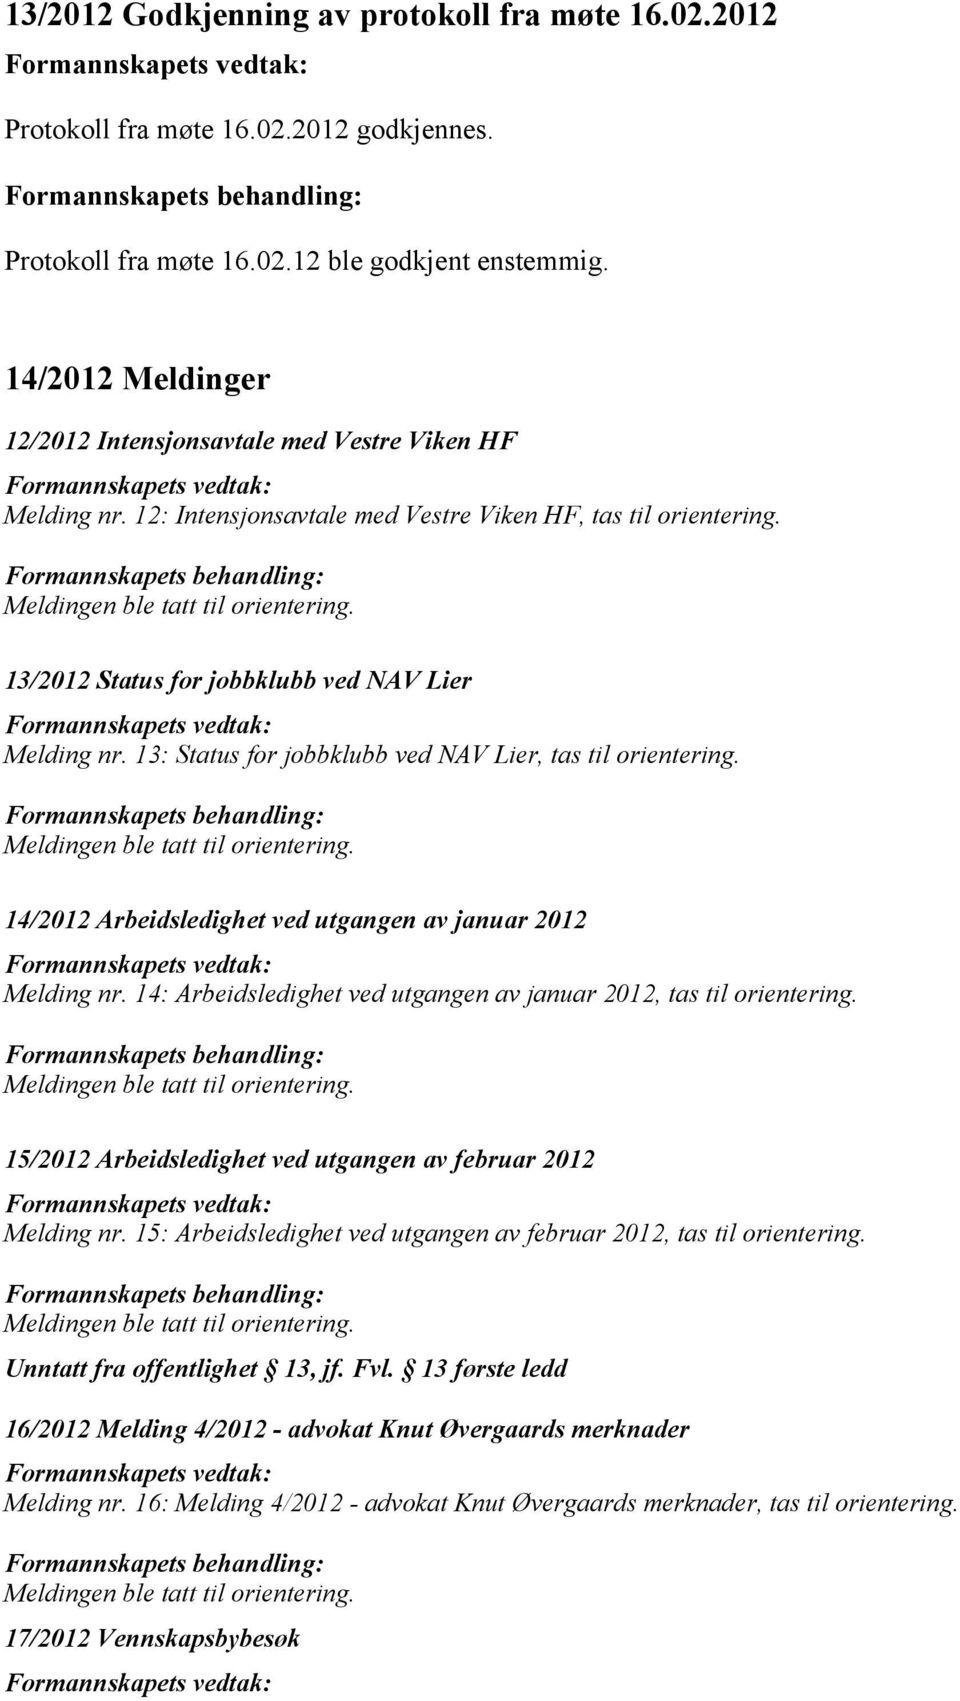 13: Status for jobbklubb ved NAV Lier, tas til orientering. 14/2012 Arbeidsledighet ved utgangen av januar 2012 Melding nr. 14: Arbeidsledighet ved utgangen av januar 2012, tas til orientering.